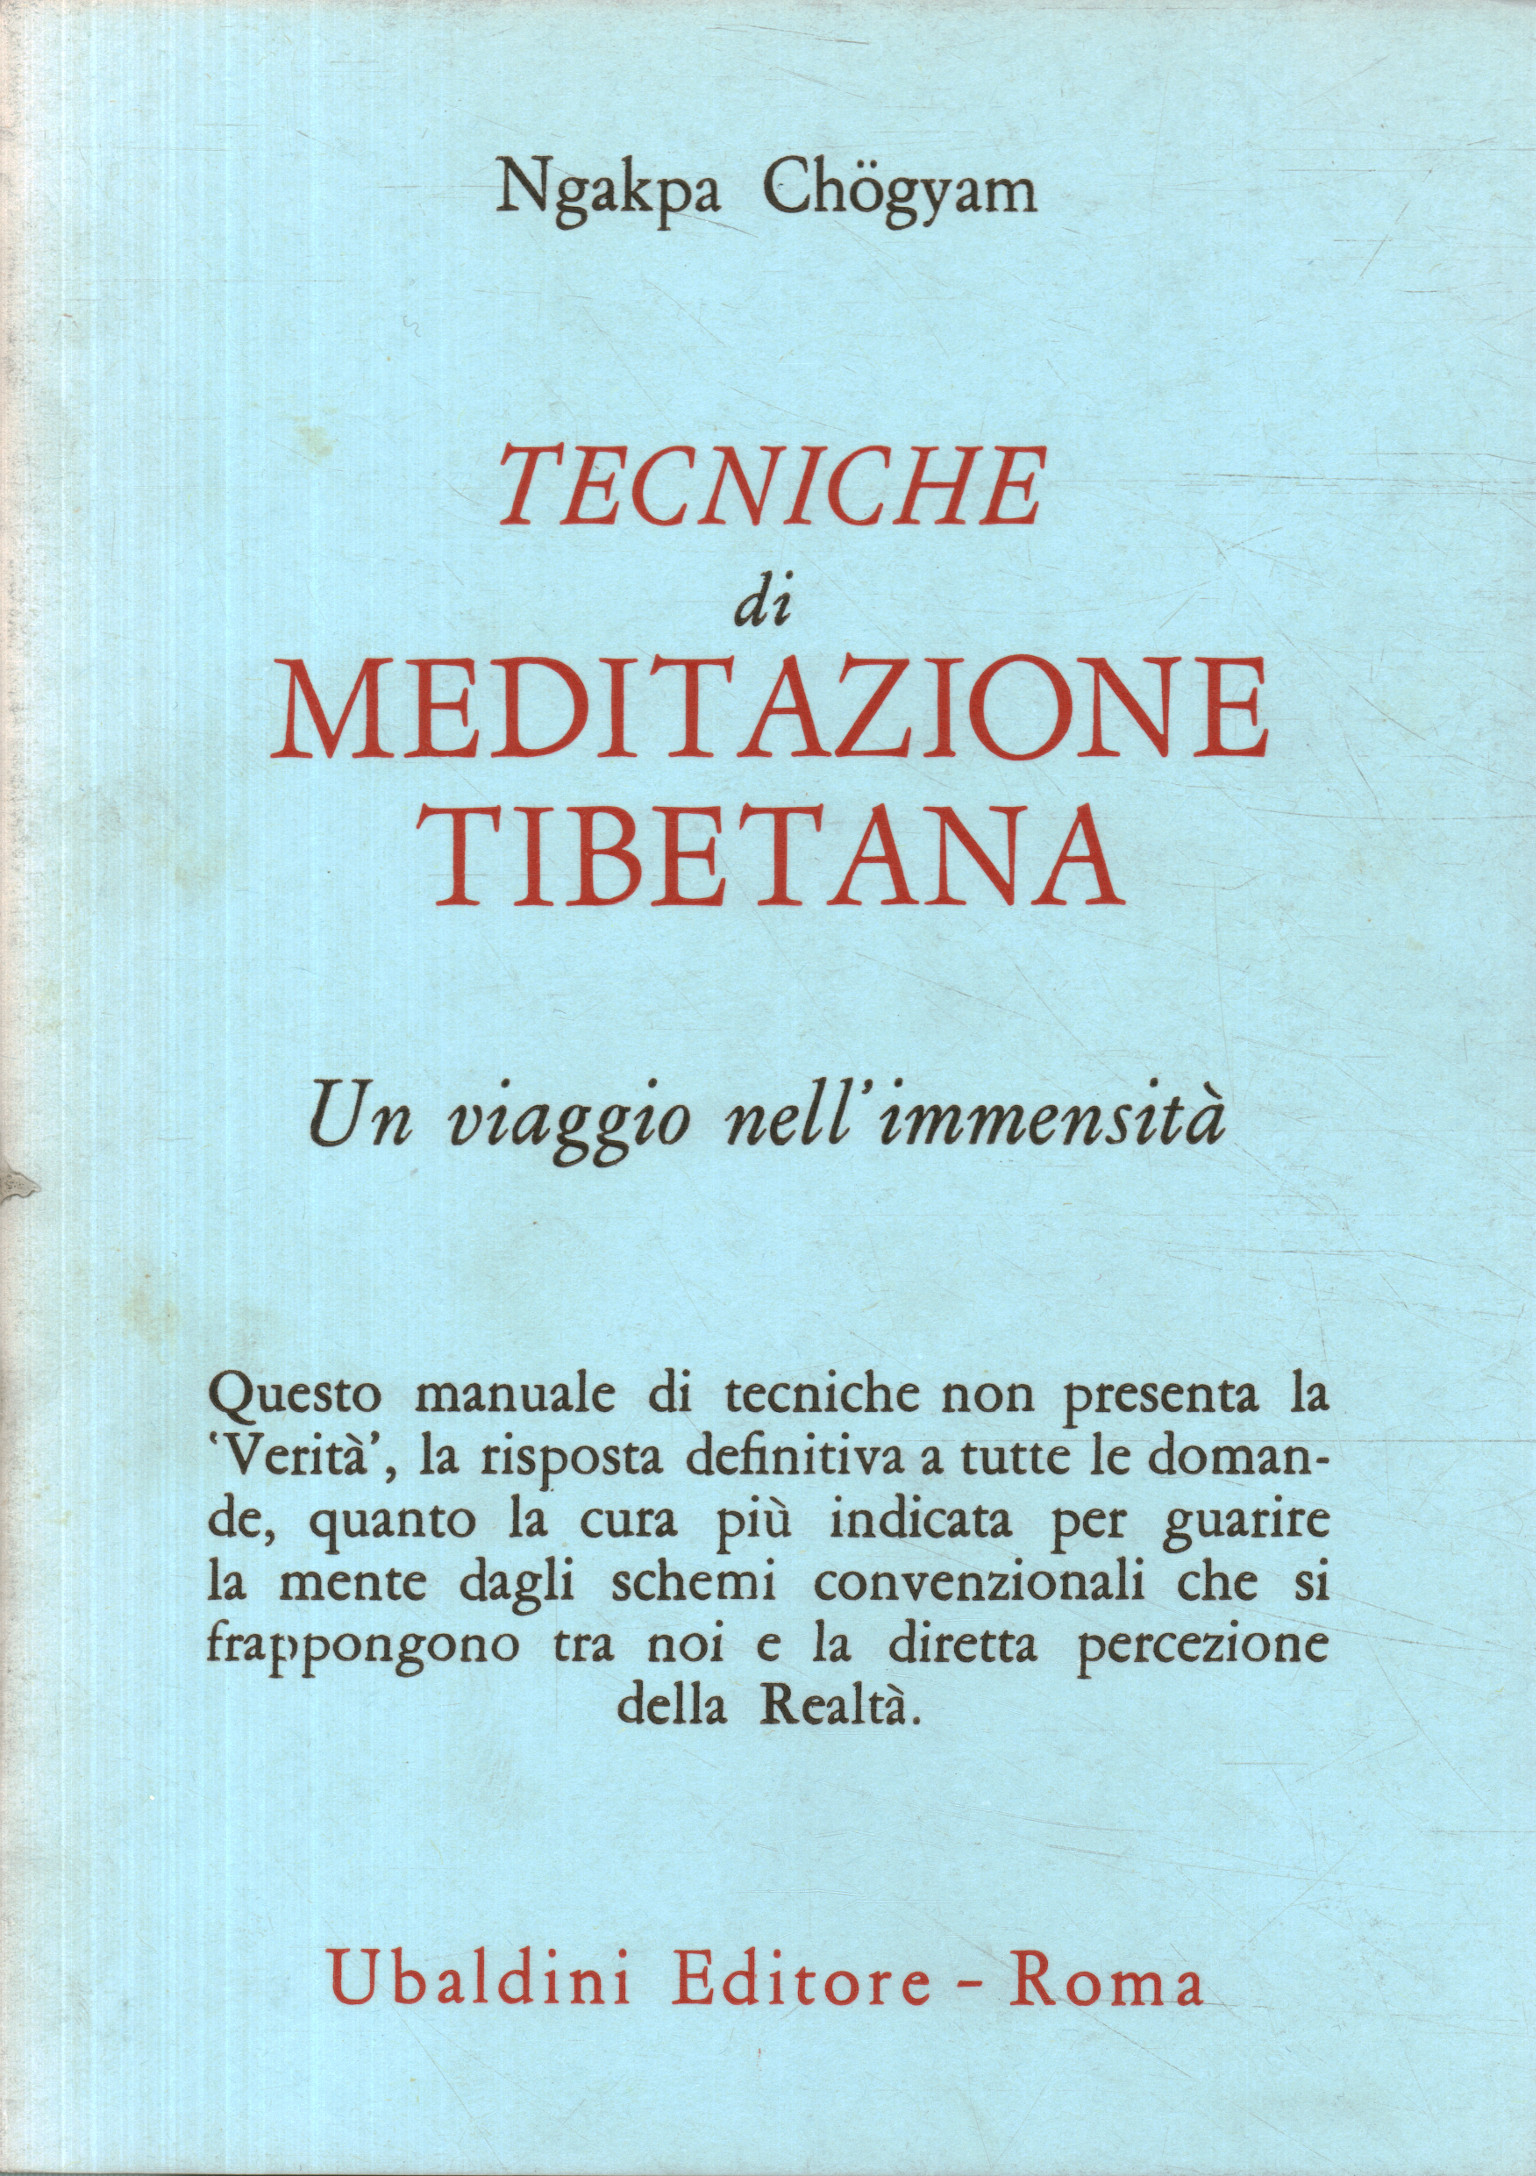 Tibetan meditation techniques